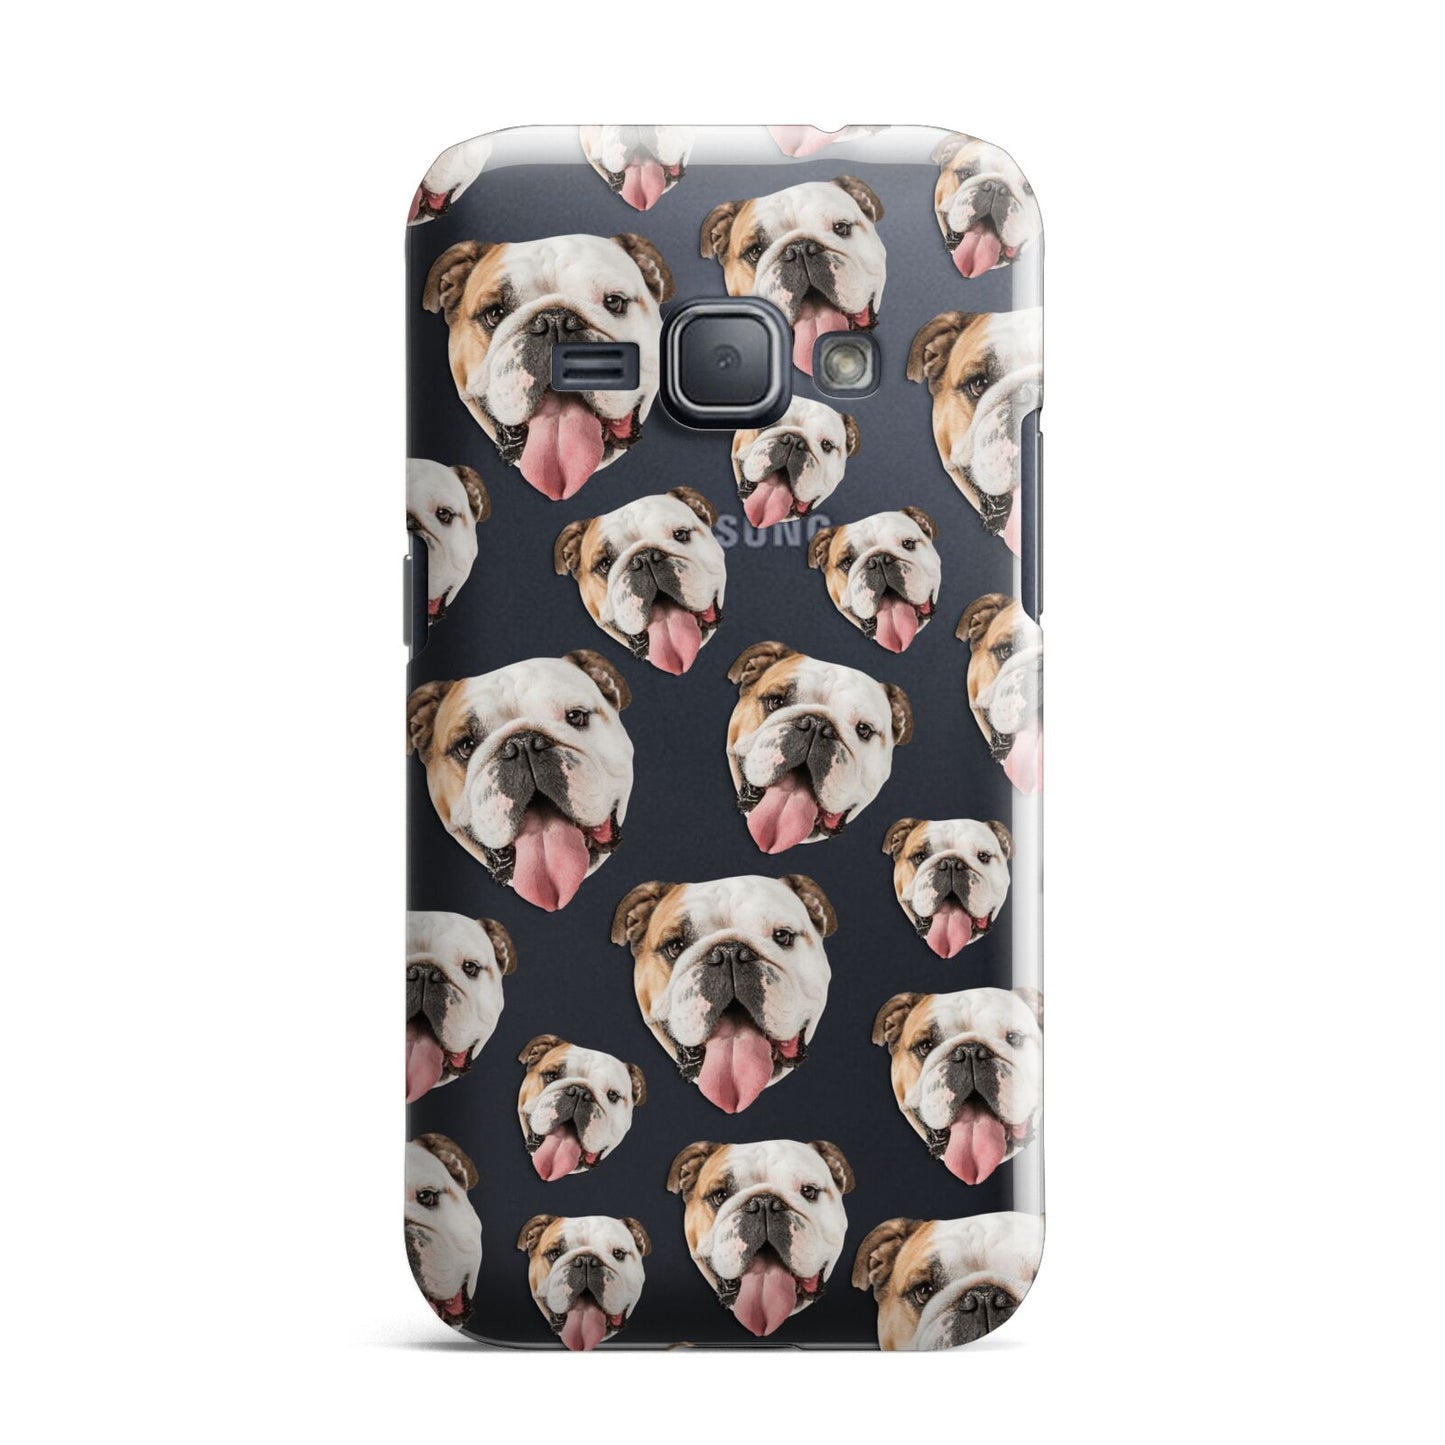 Dog Photo Face Samsung Galaxy J1 2016 Case